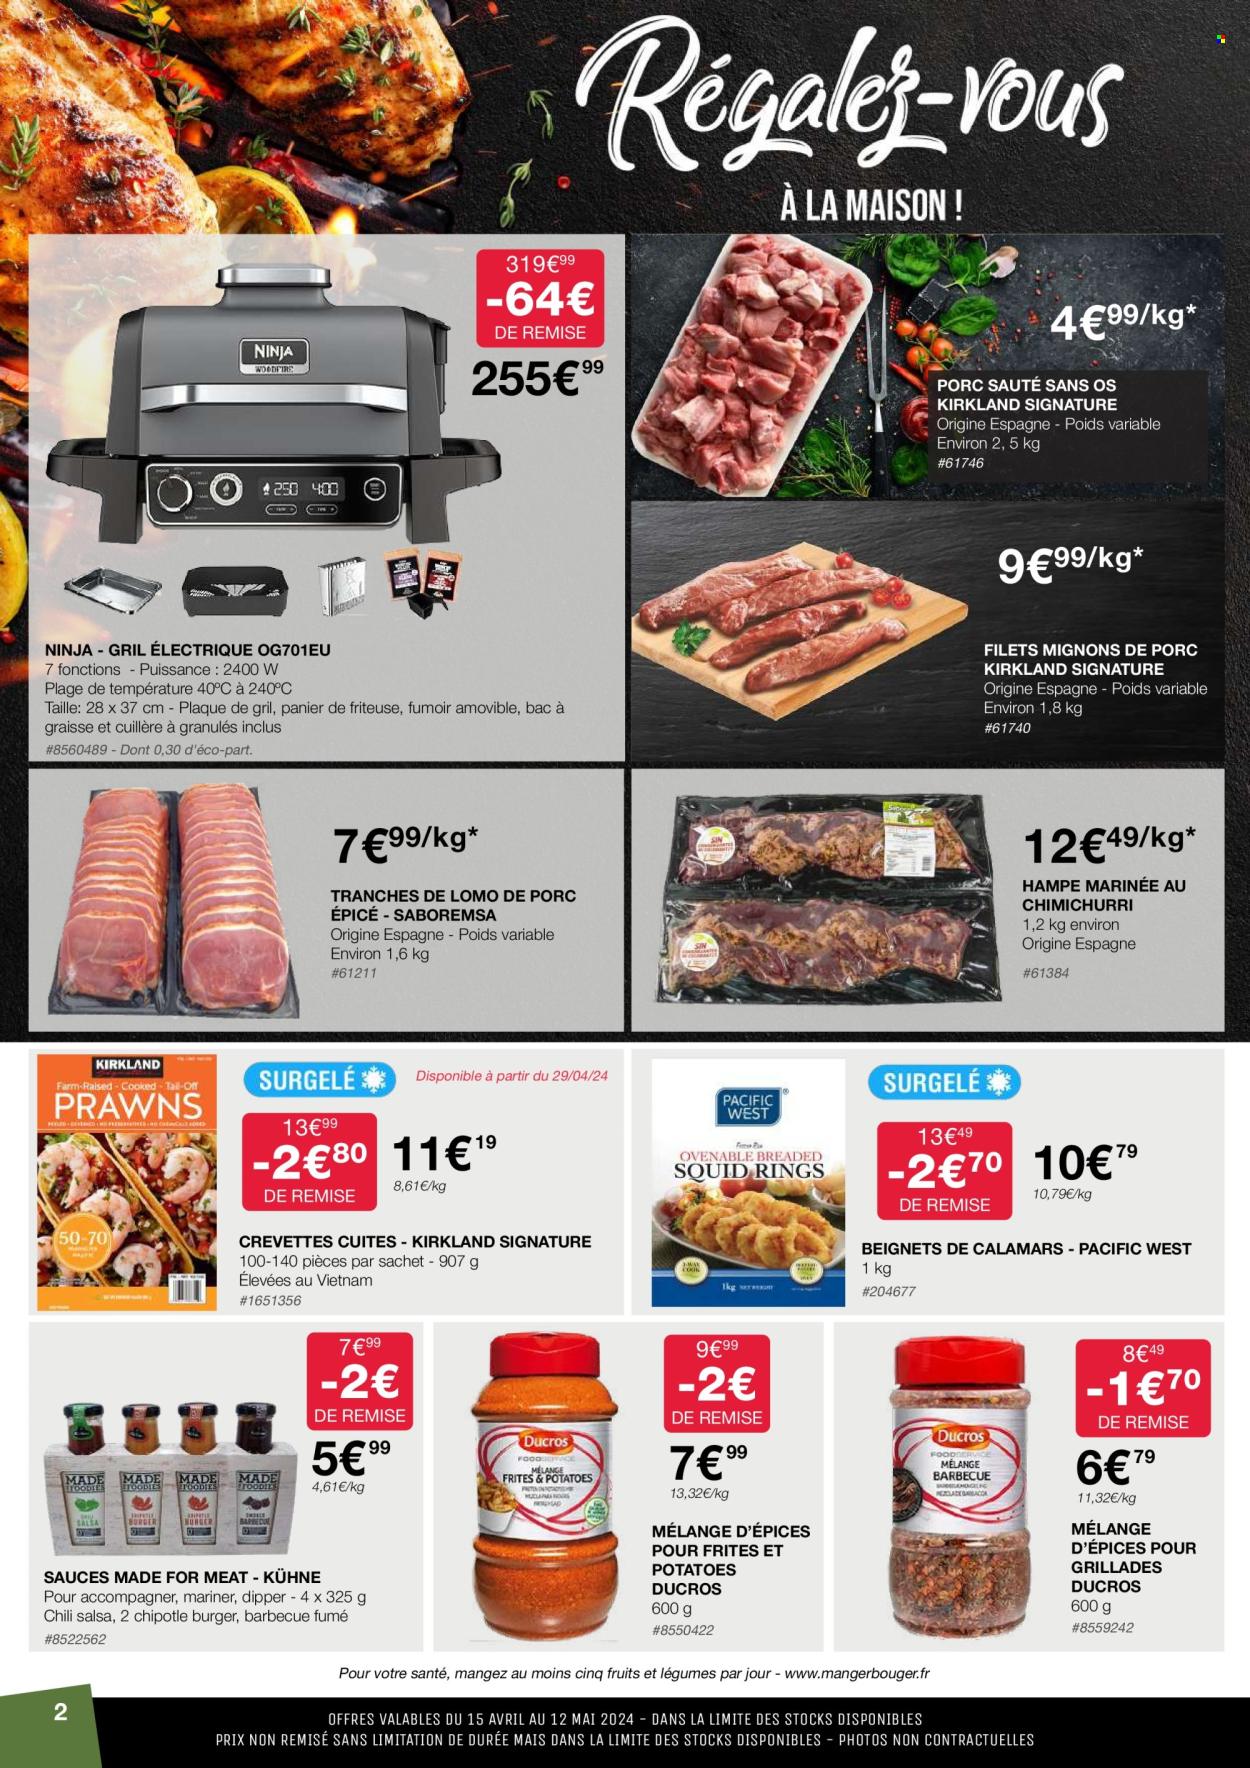 thumbnail - Catalogue Costco - 15/04/2024 - 12/05/2024 - Produits soldés - filet mignon, sauté de porc, viande de porc, maïs, pâtisseries sucrées, crevettes, calamars, épices, friteuse. Page 2.